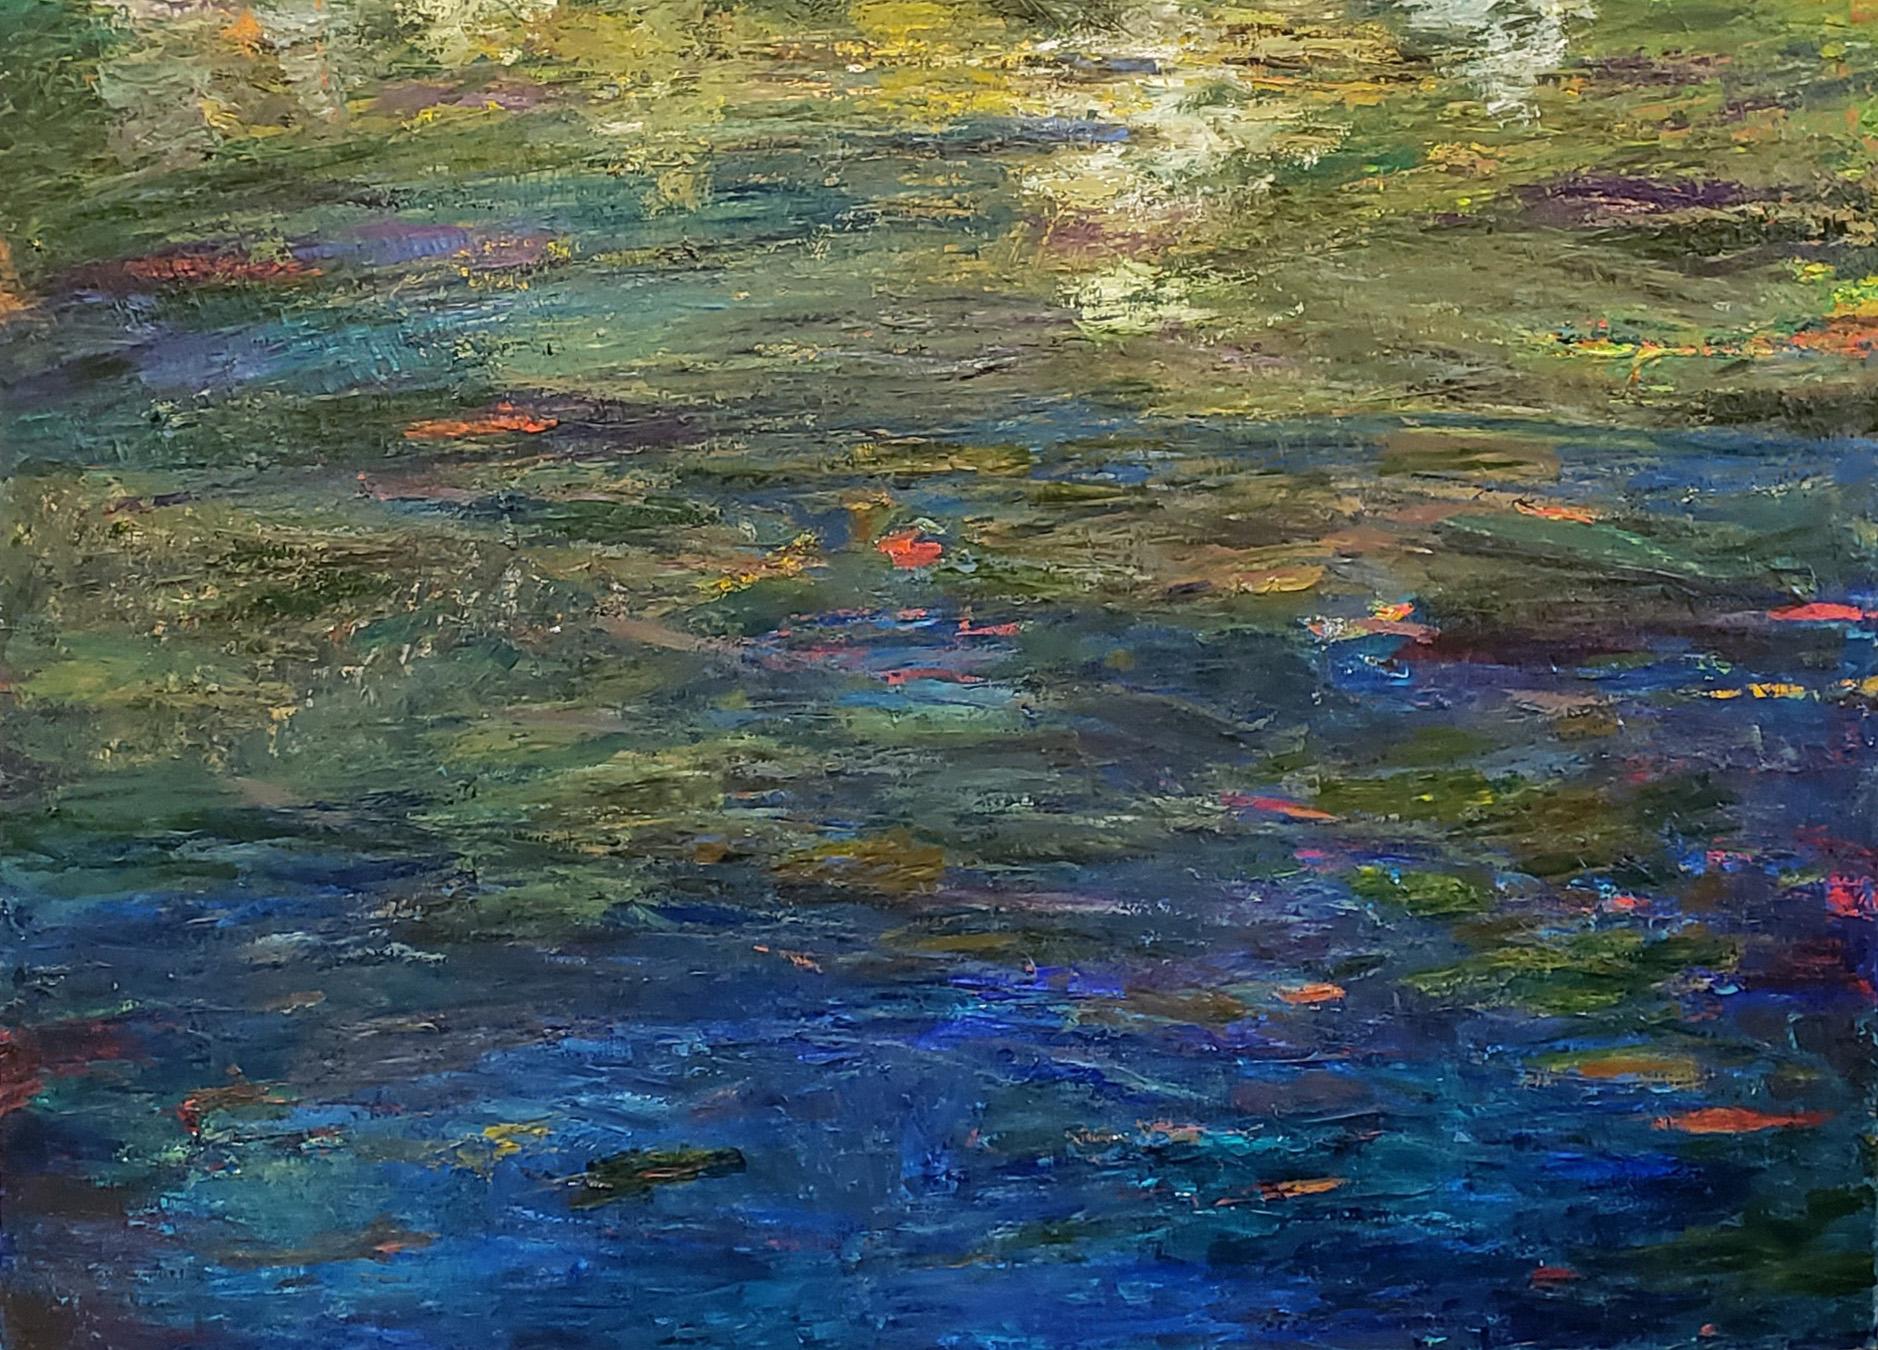 Nachtteich, zeitgenössisches strukturiertes impressionistisches Landschaftsgemälde (Abstrakter Impressionismus), Painting, von Marsha Heller